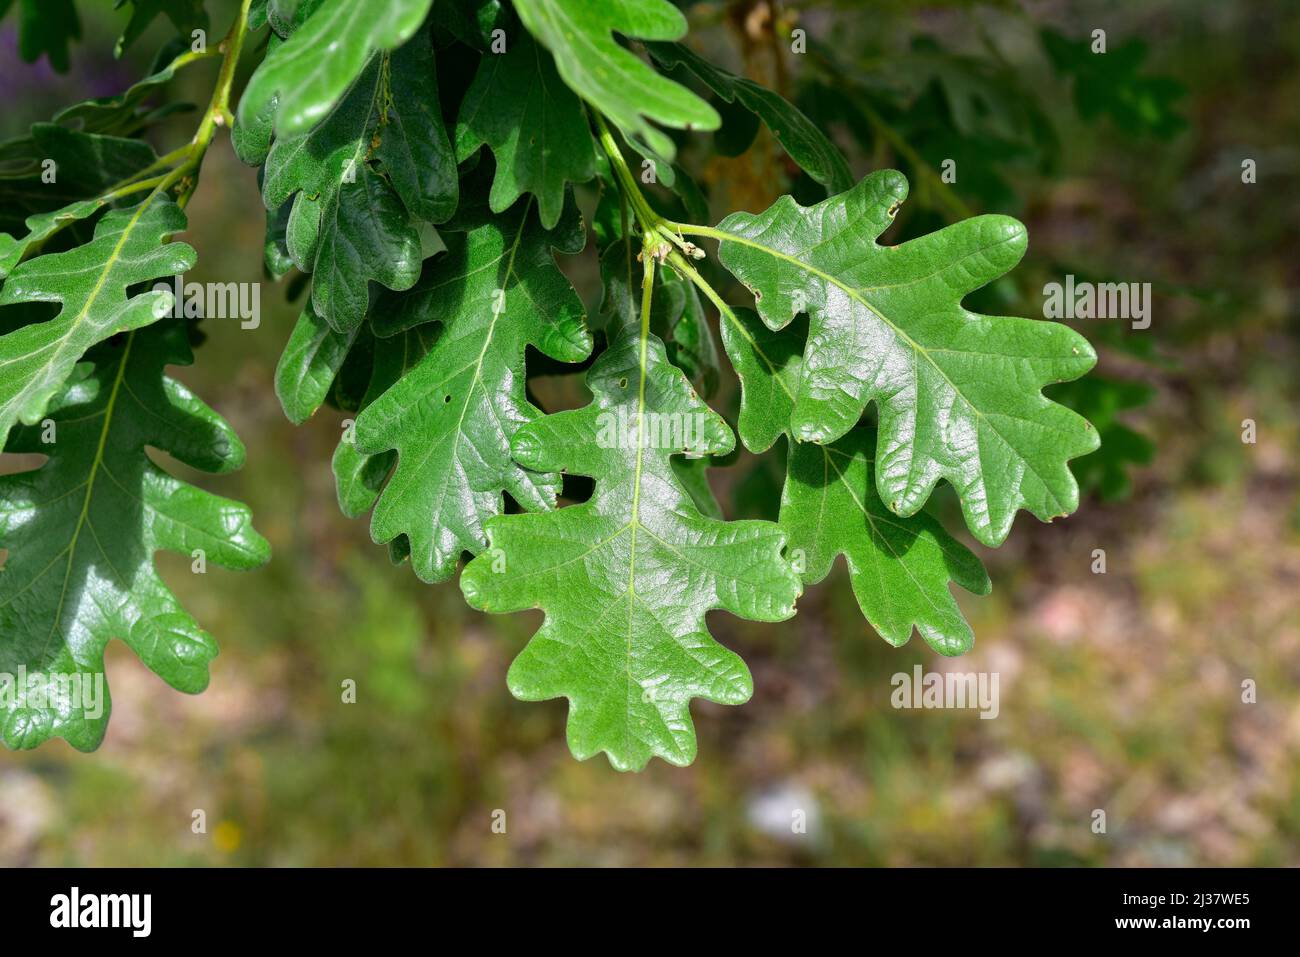 Le chêne pyrénéen (Quercus pyrenaica) est un arbre à feuilles caduques originaire du bassin méditerranéen occidental (péninsule ibérique, montagnes de l'ouest de la France et du Maroc). Banque D'Images